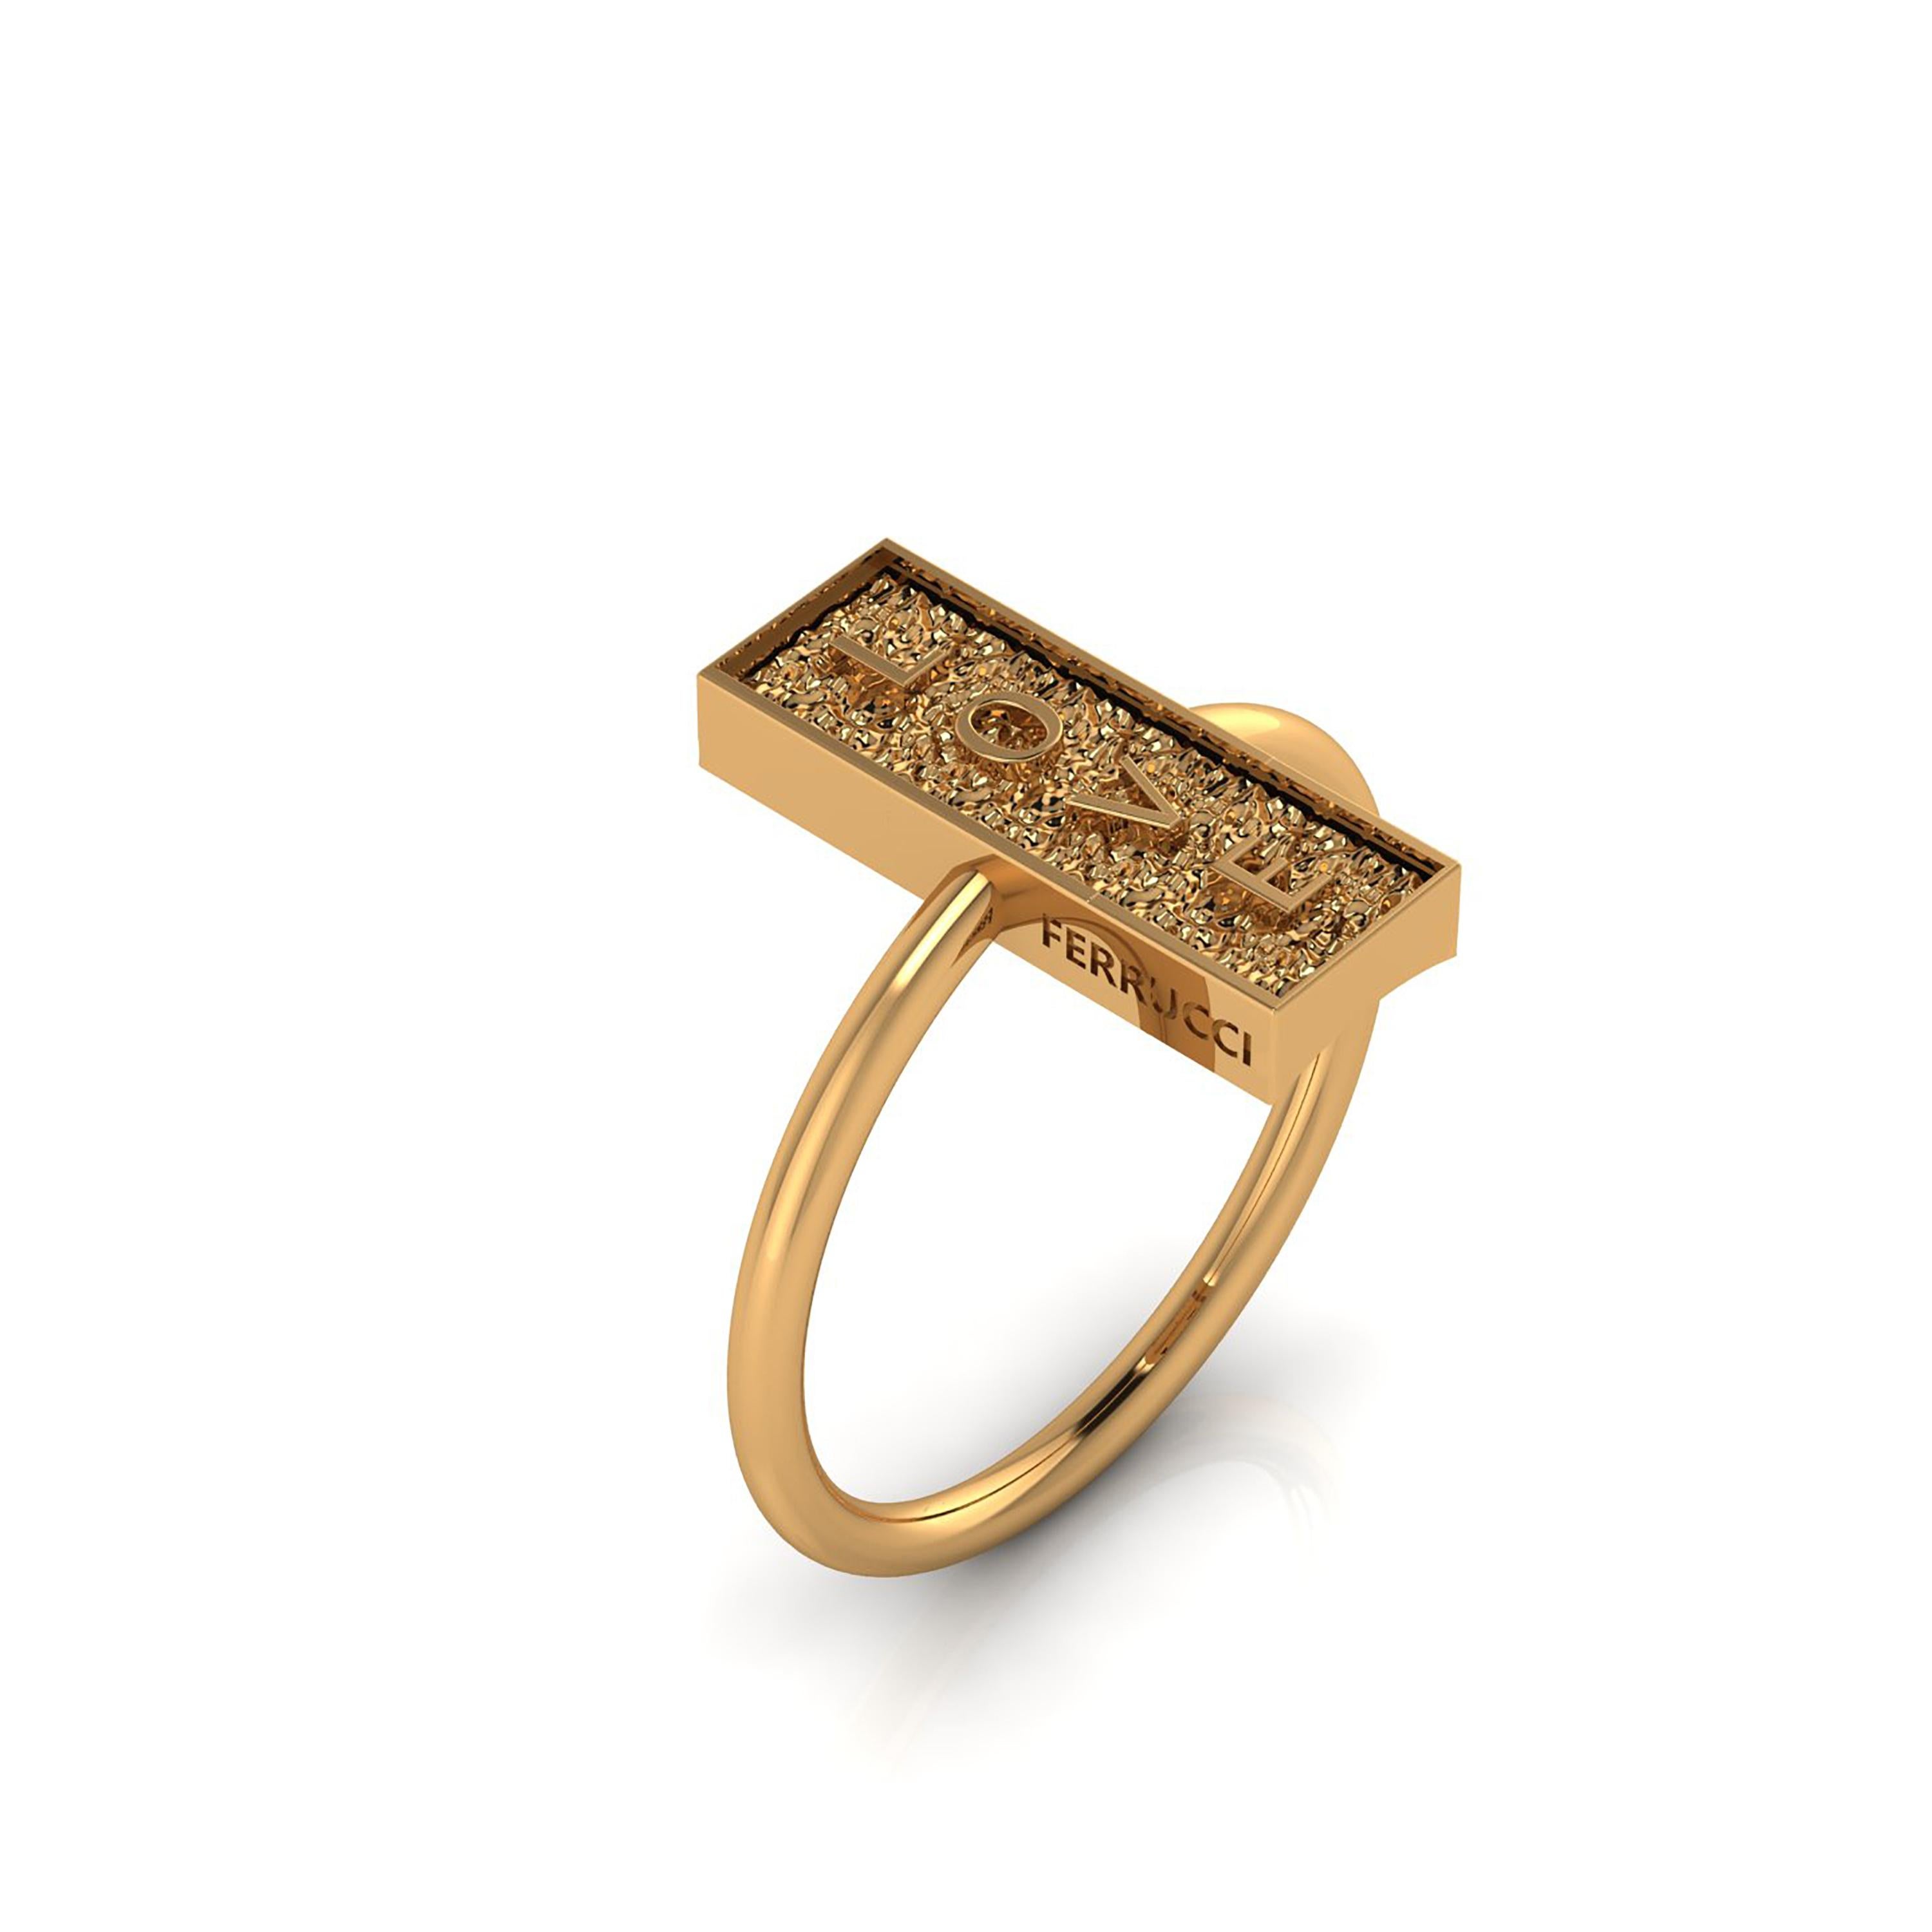 FERRUCCI der Love Rock Ring, in 18k Gelbgold konzipiert, eine neue Art und Weise, um mit Ihnen die stilvolle, schöne 18k Gelbgold, ewig in der Zeit, moderne und kühne Formen kombiniert mit der organischen Oberfläche der Felsen. Das Symbol der ewigen